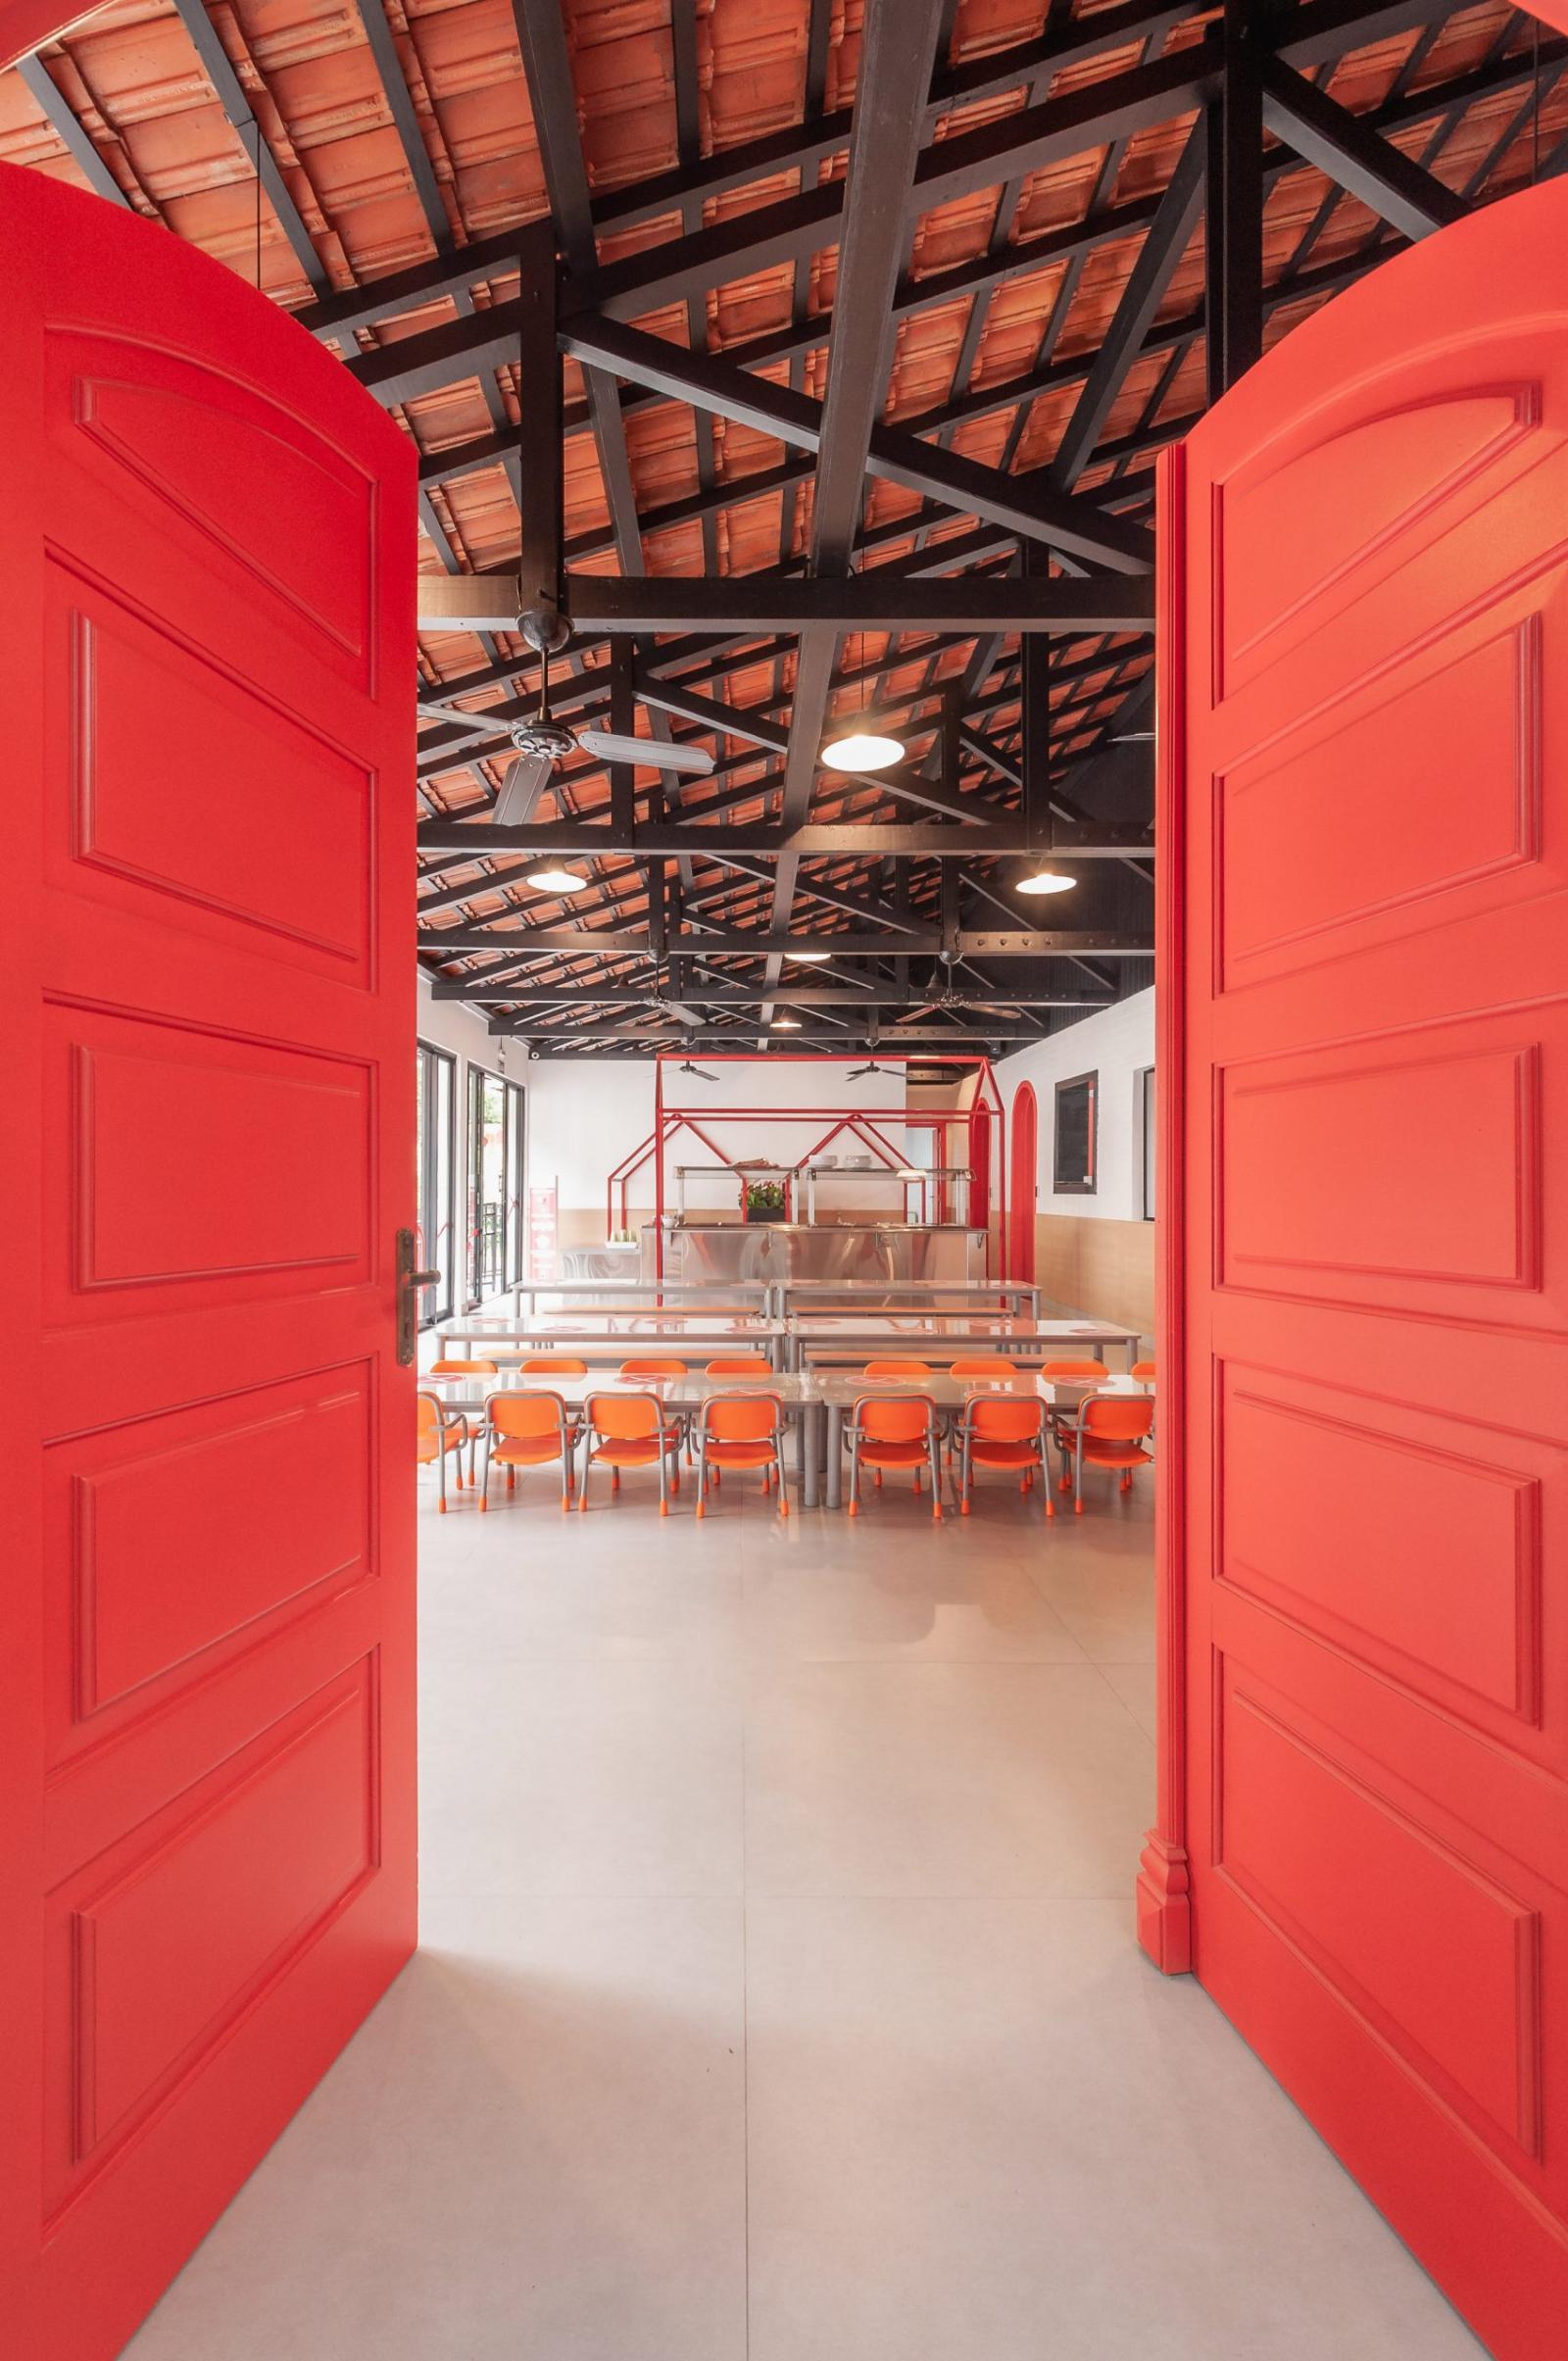 Cửa hai cánh cao rộng sơn màu đỏ cam dẫn lối vào phòng ăn.